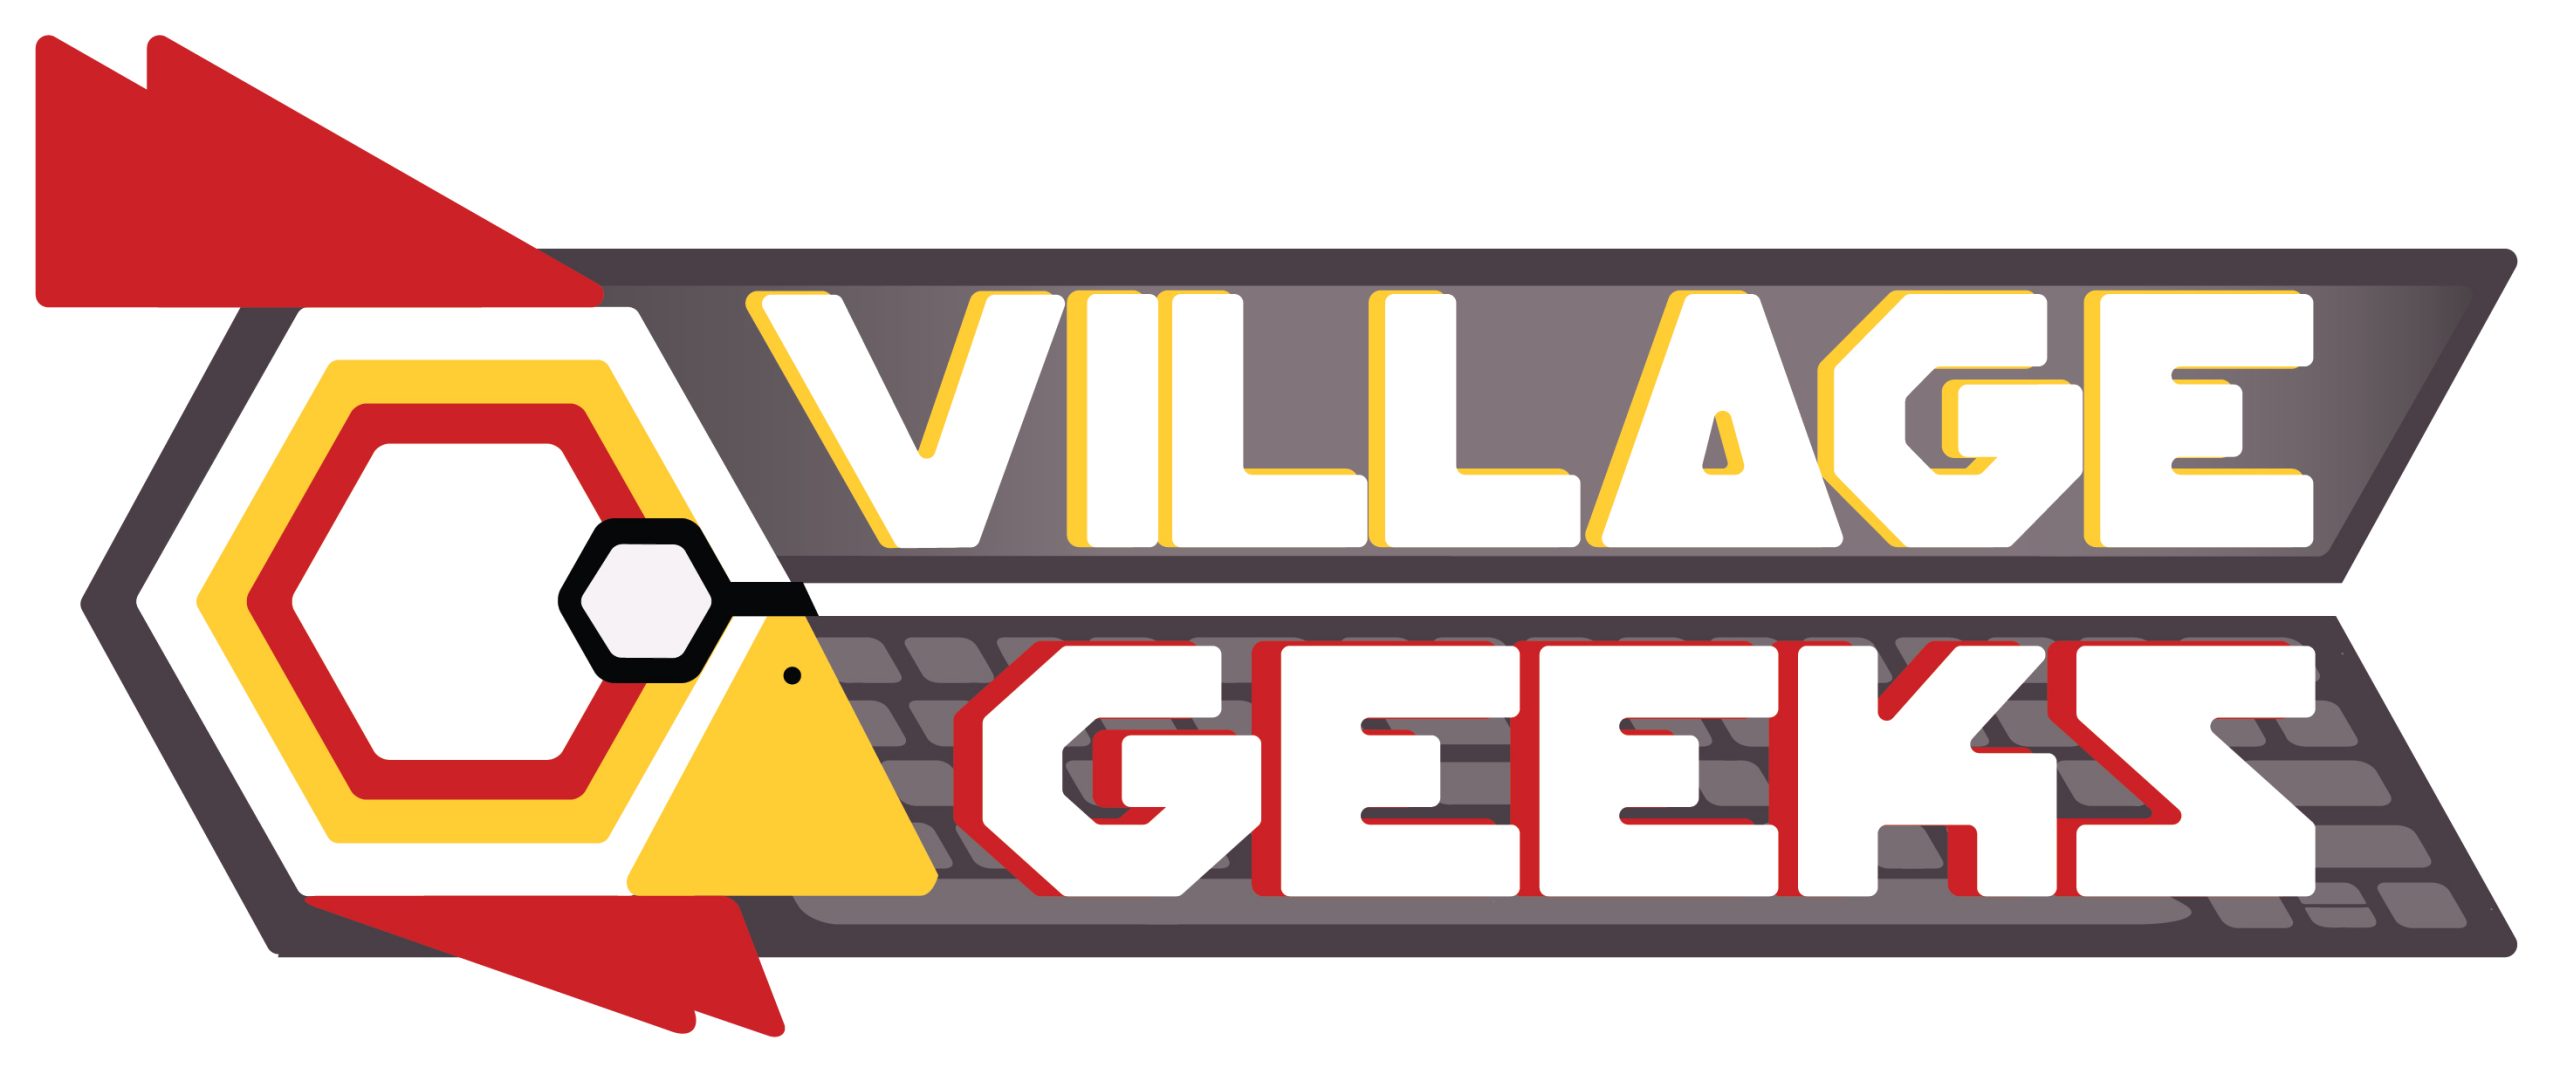 Village Geeks